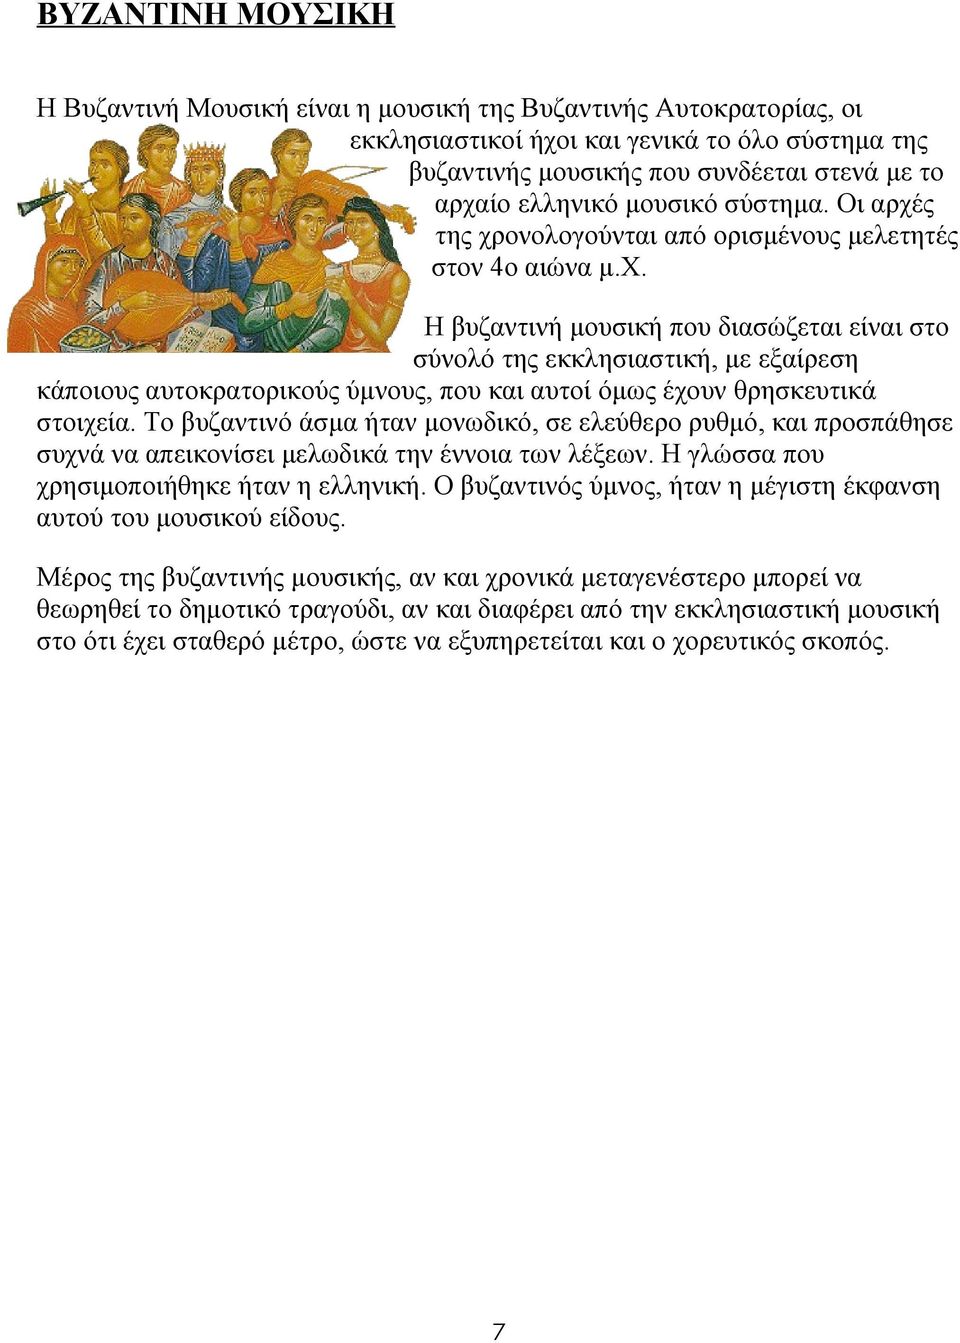 Το βυζαντινό άσμα ήταν μονωδικό, σε ελεύθερο ρυθμό, και προσπάθησε συχνά να απεικονίσει μελωδικά την έννοια των λέξεων. Η γλώσσα που χρησιμοποιήθηκε ήταν η ελληνική.